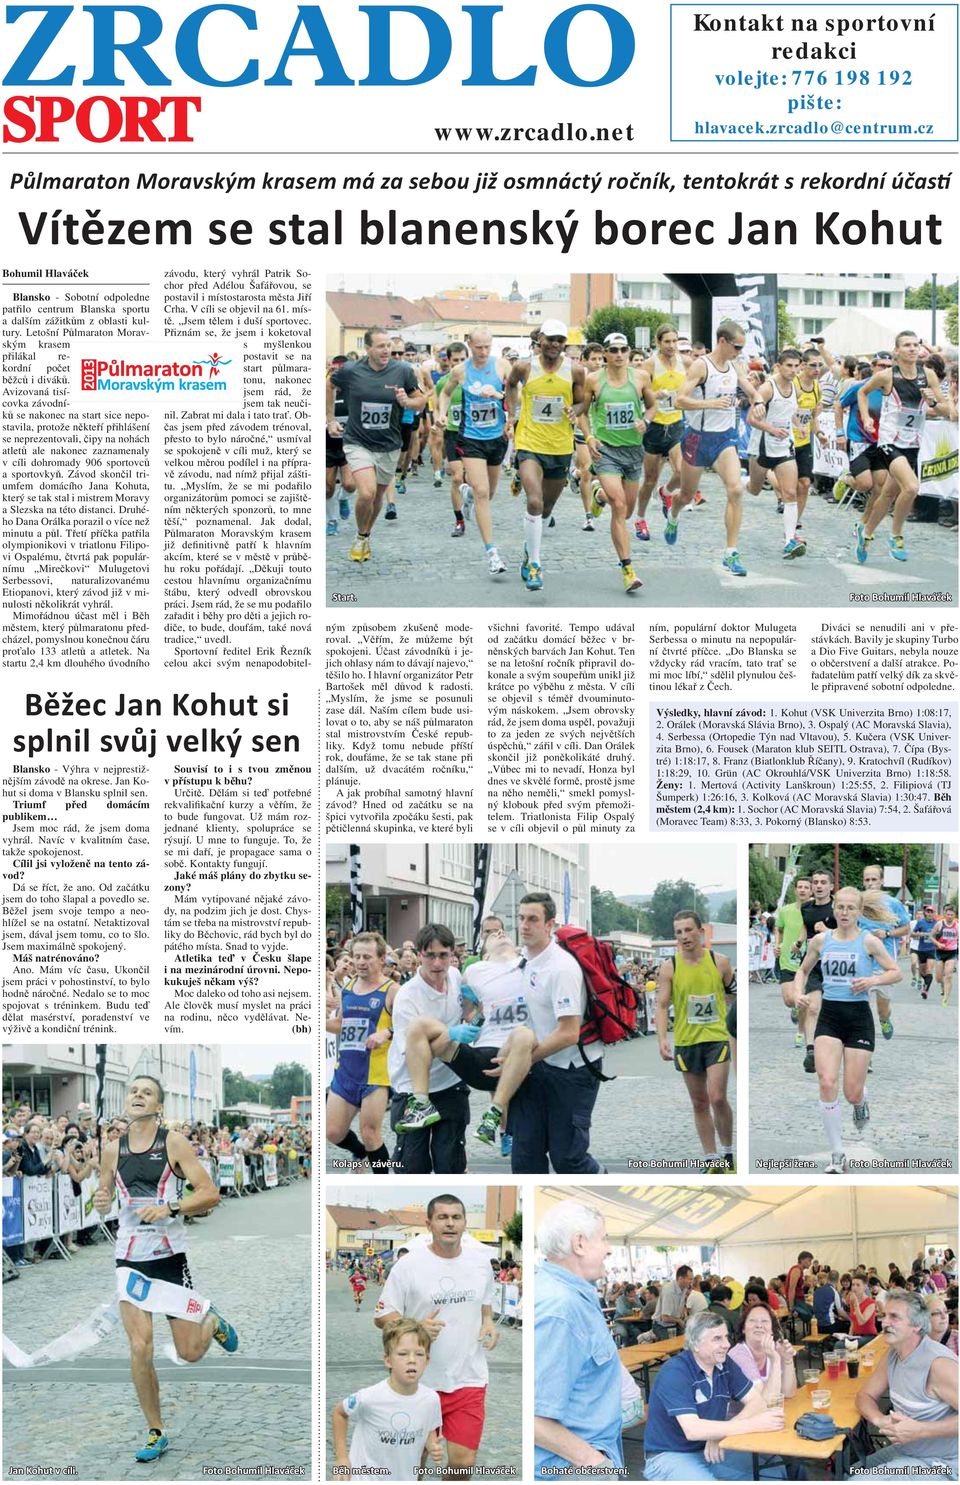 zážitkům z oblasti kultury. Letošní Půlmaraton Moravským krasem přilákal rekordní počet běžců i diváků.